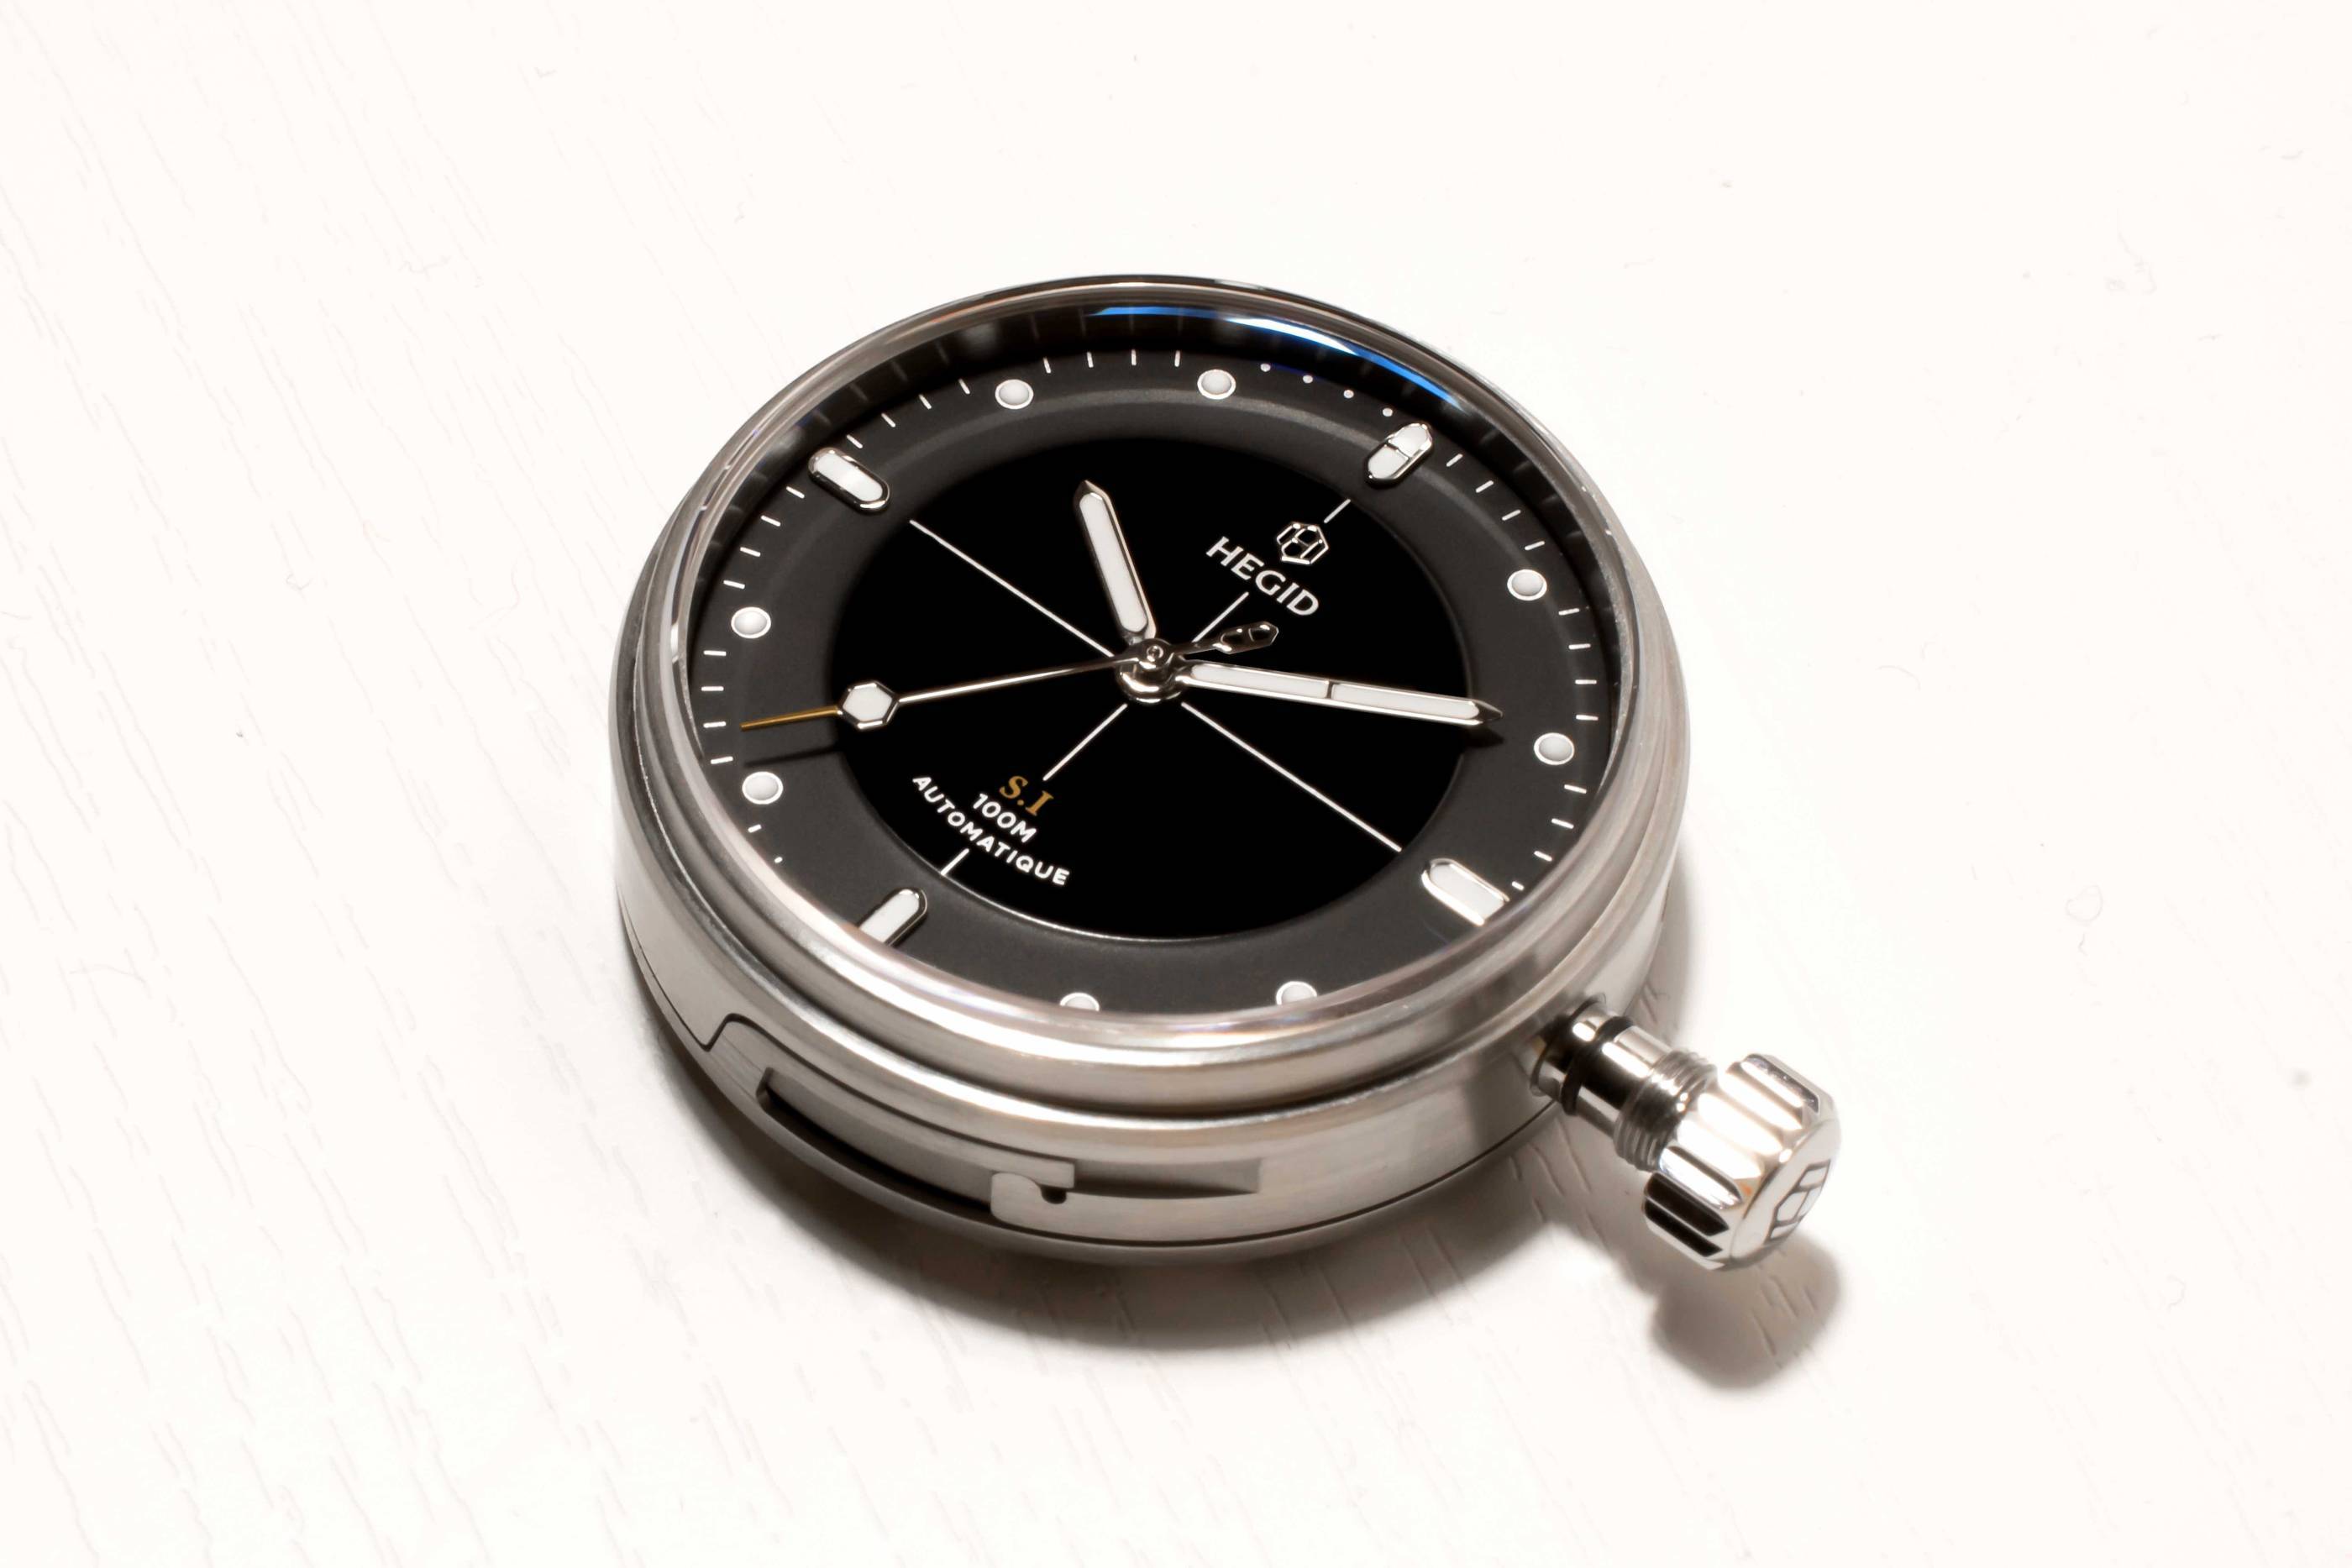 Hegid, una nueva manera de vender relojes